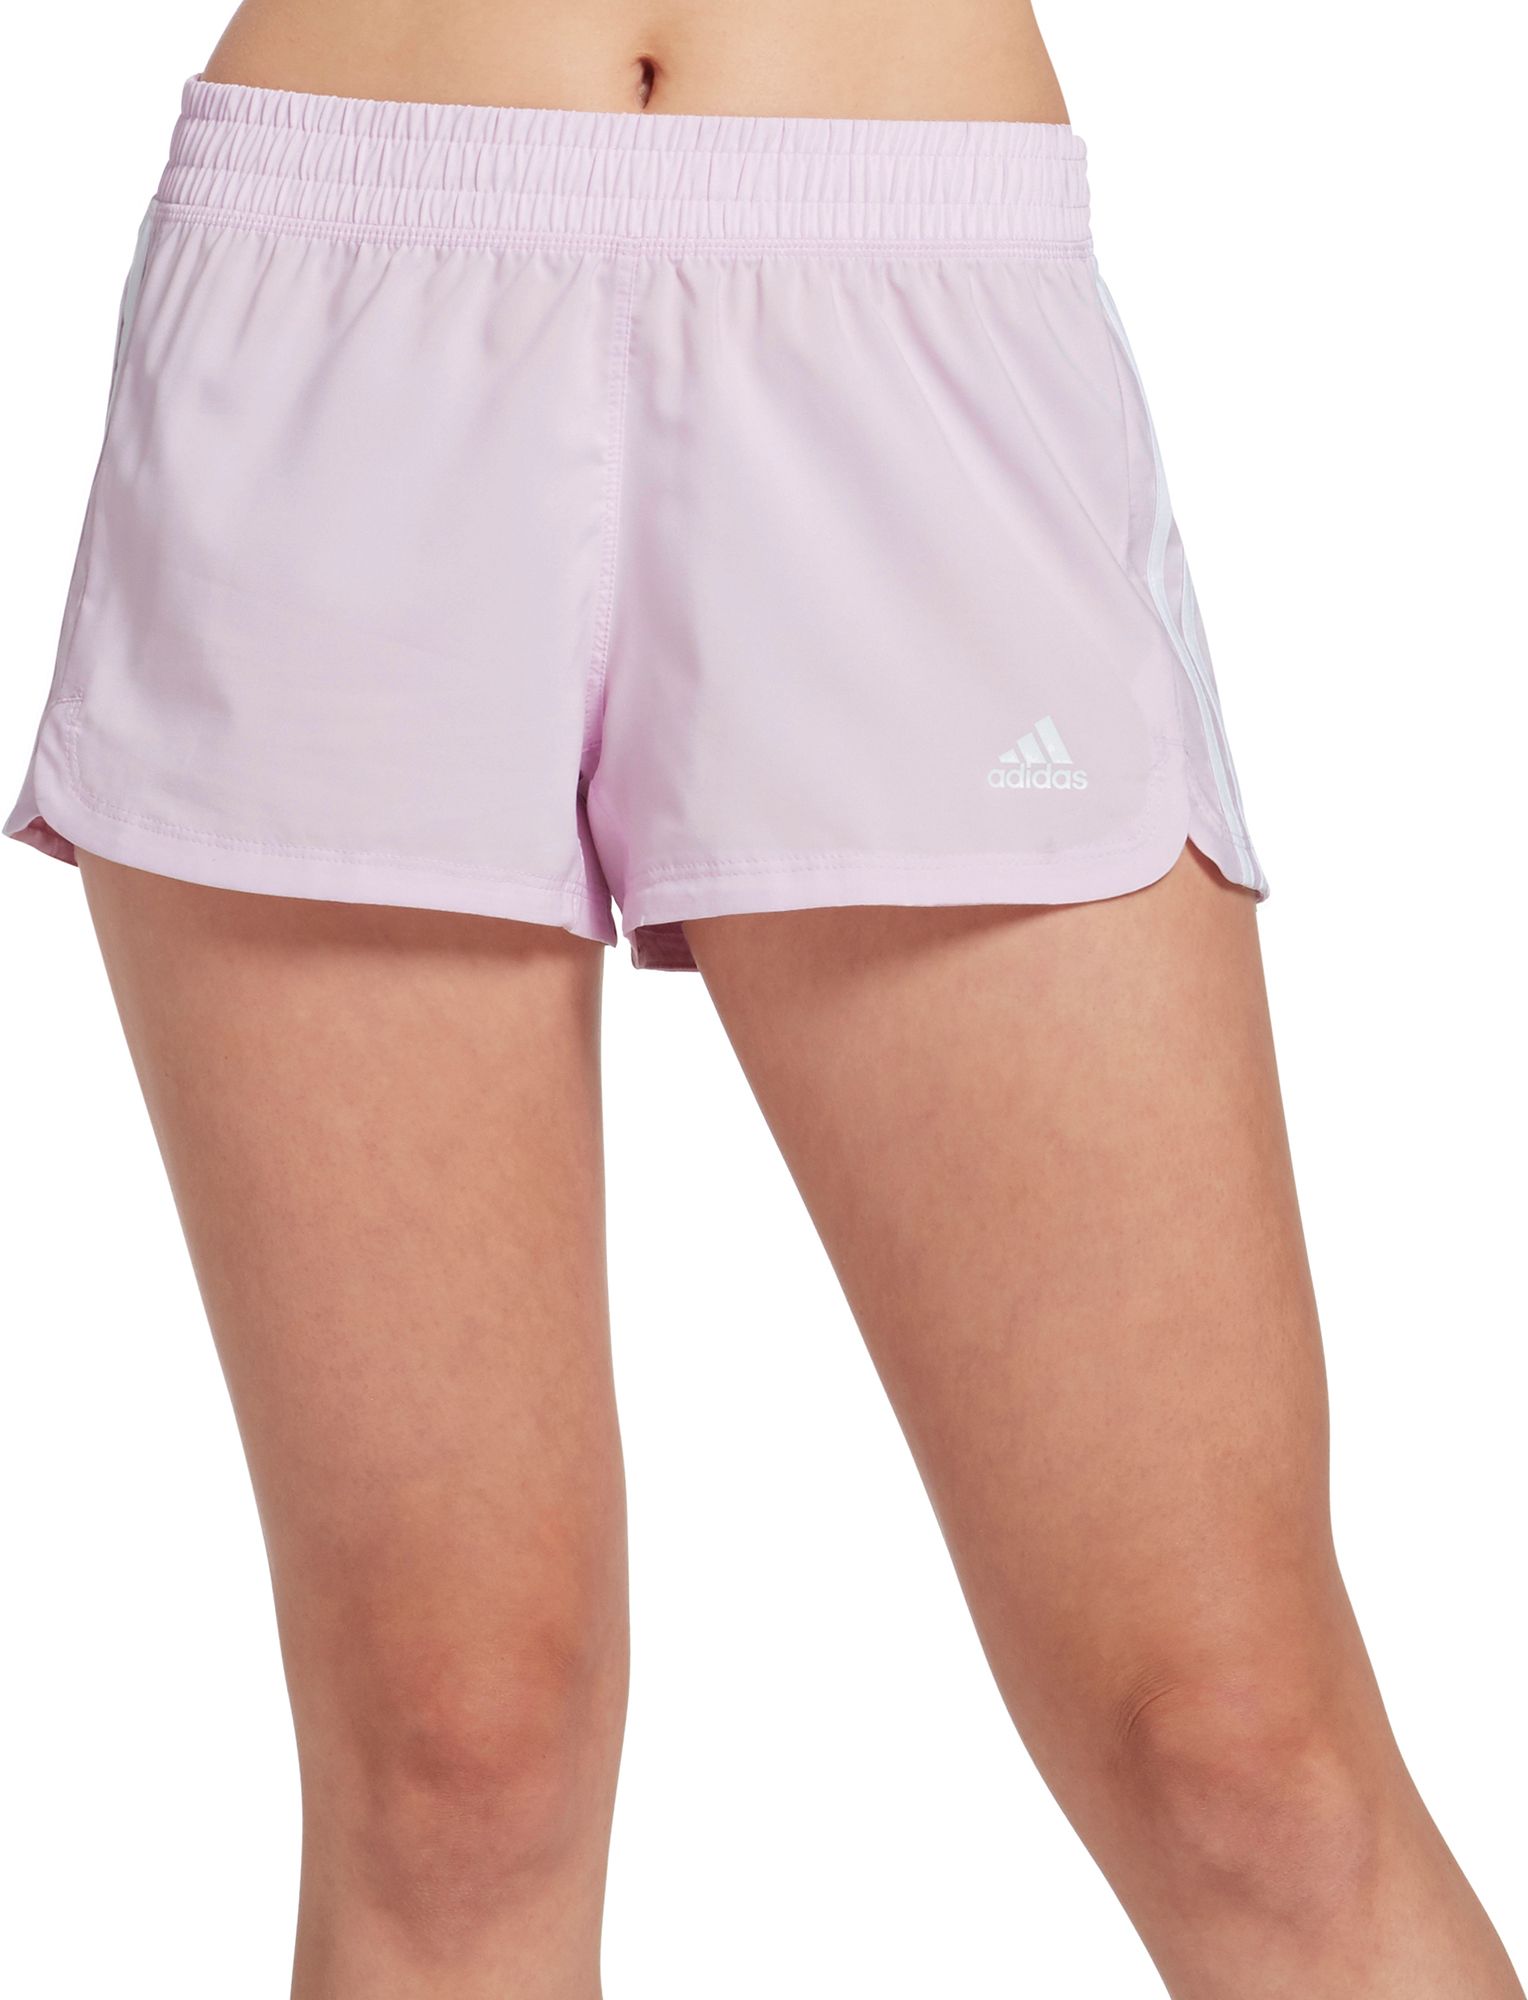 adidas shorts women pink